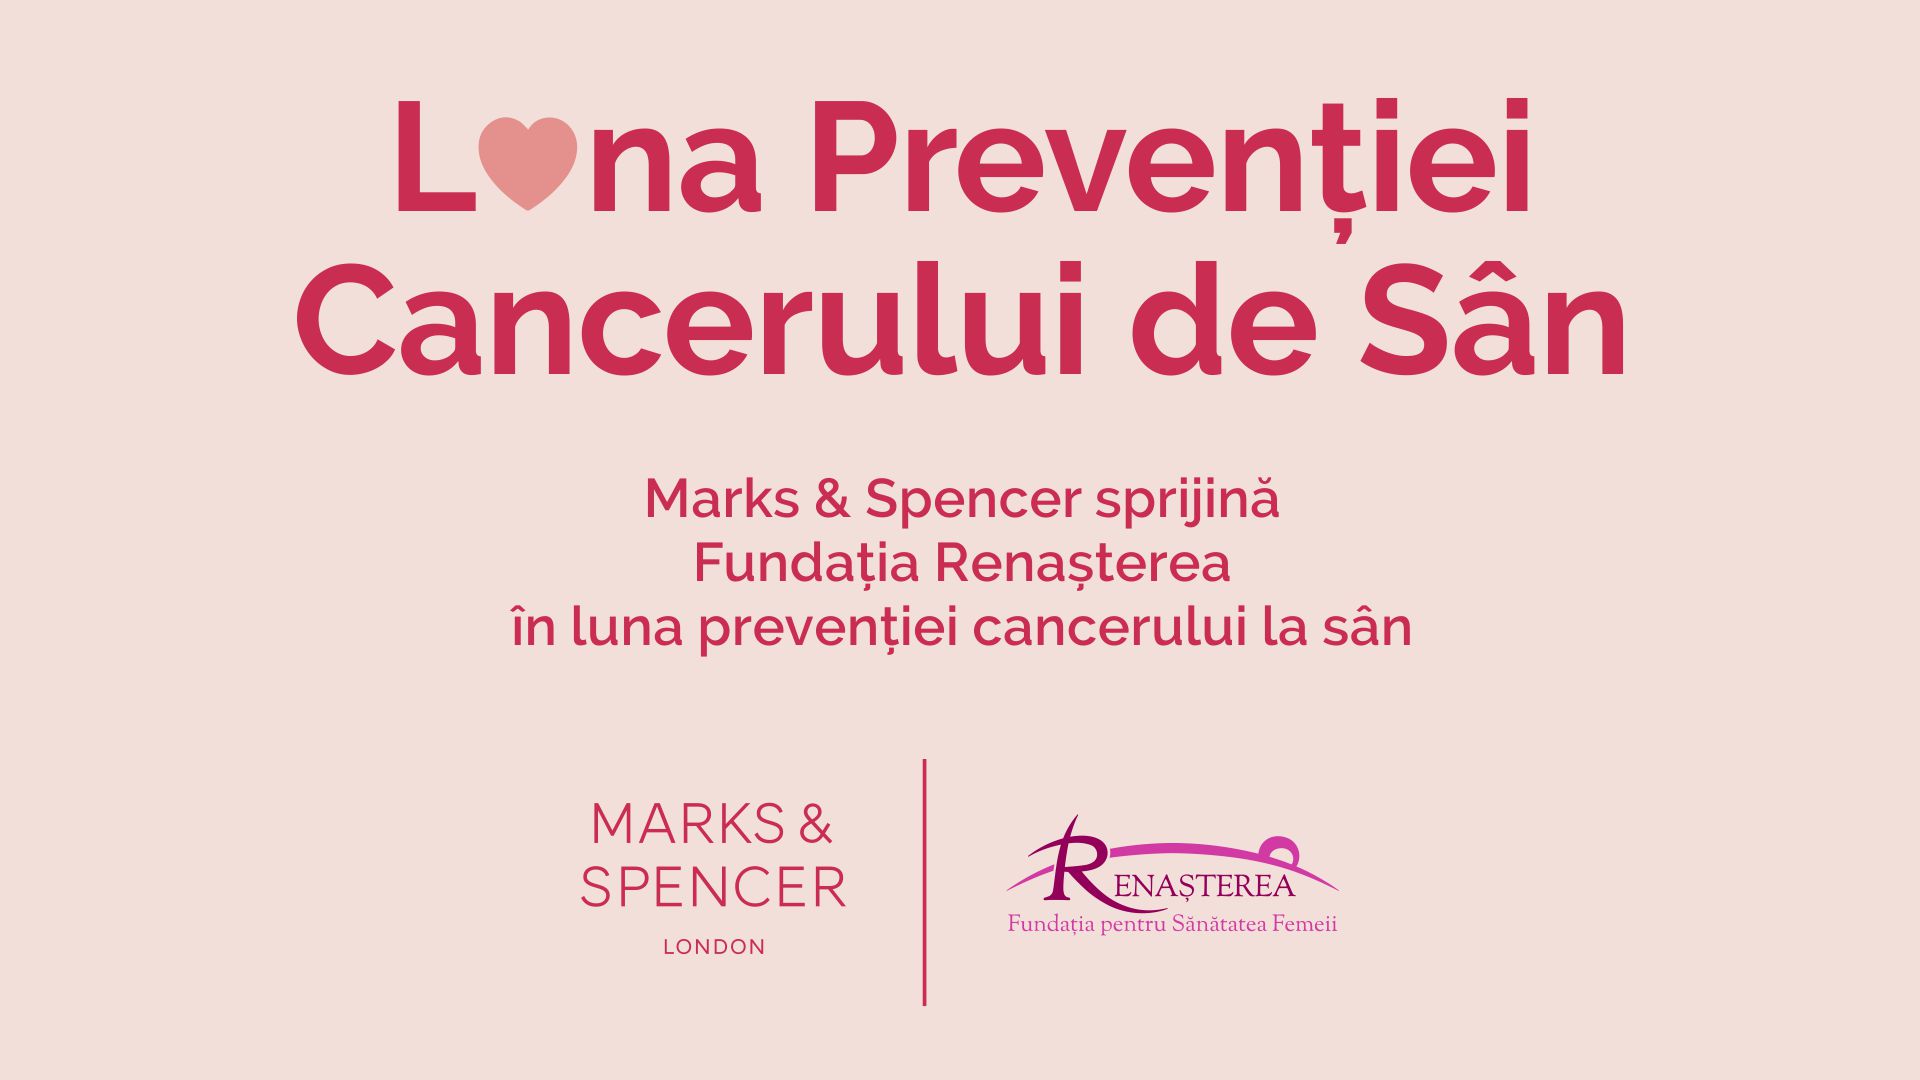 marks-and-spencer-sustine-campania-de-preventie-a-cancerului-la-san-in-parteneriat-cufundatia-renasterea